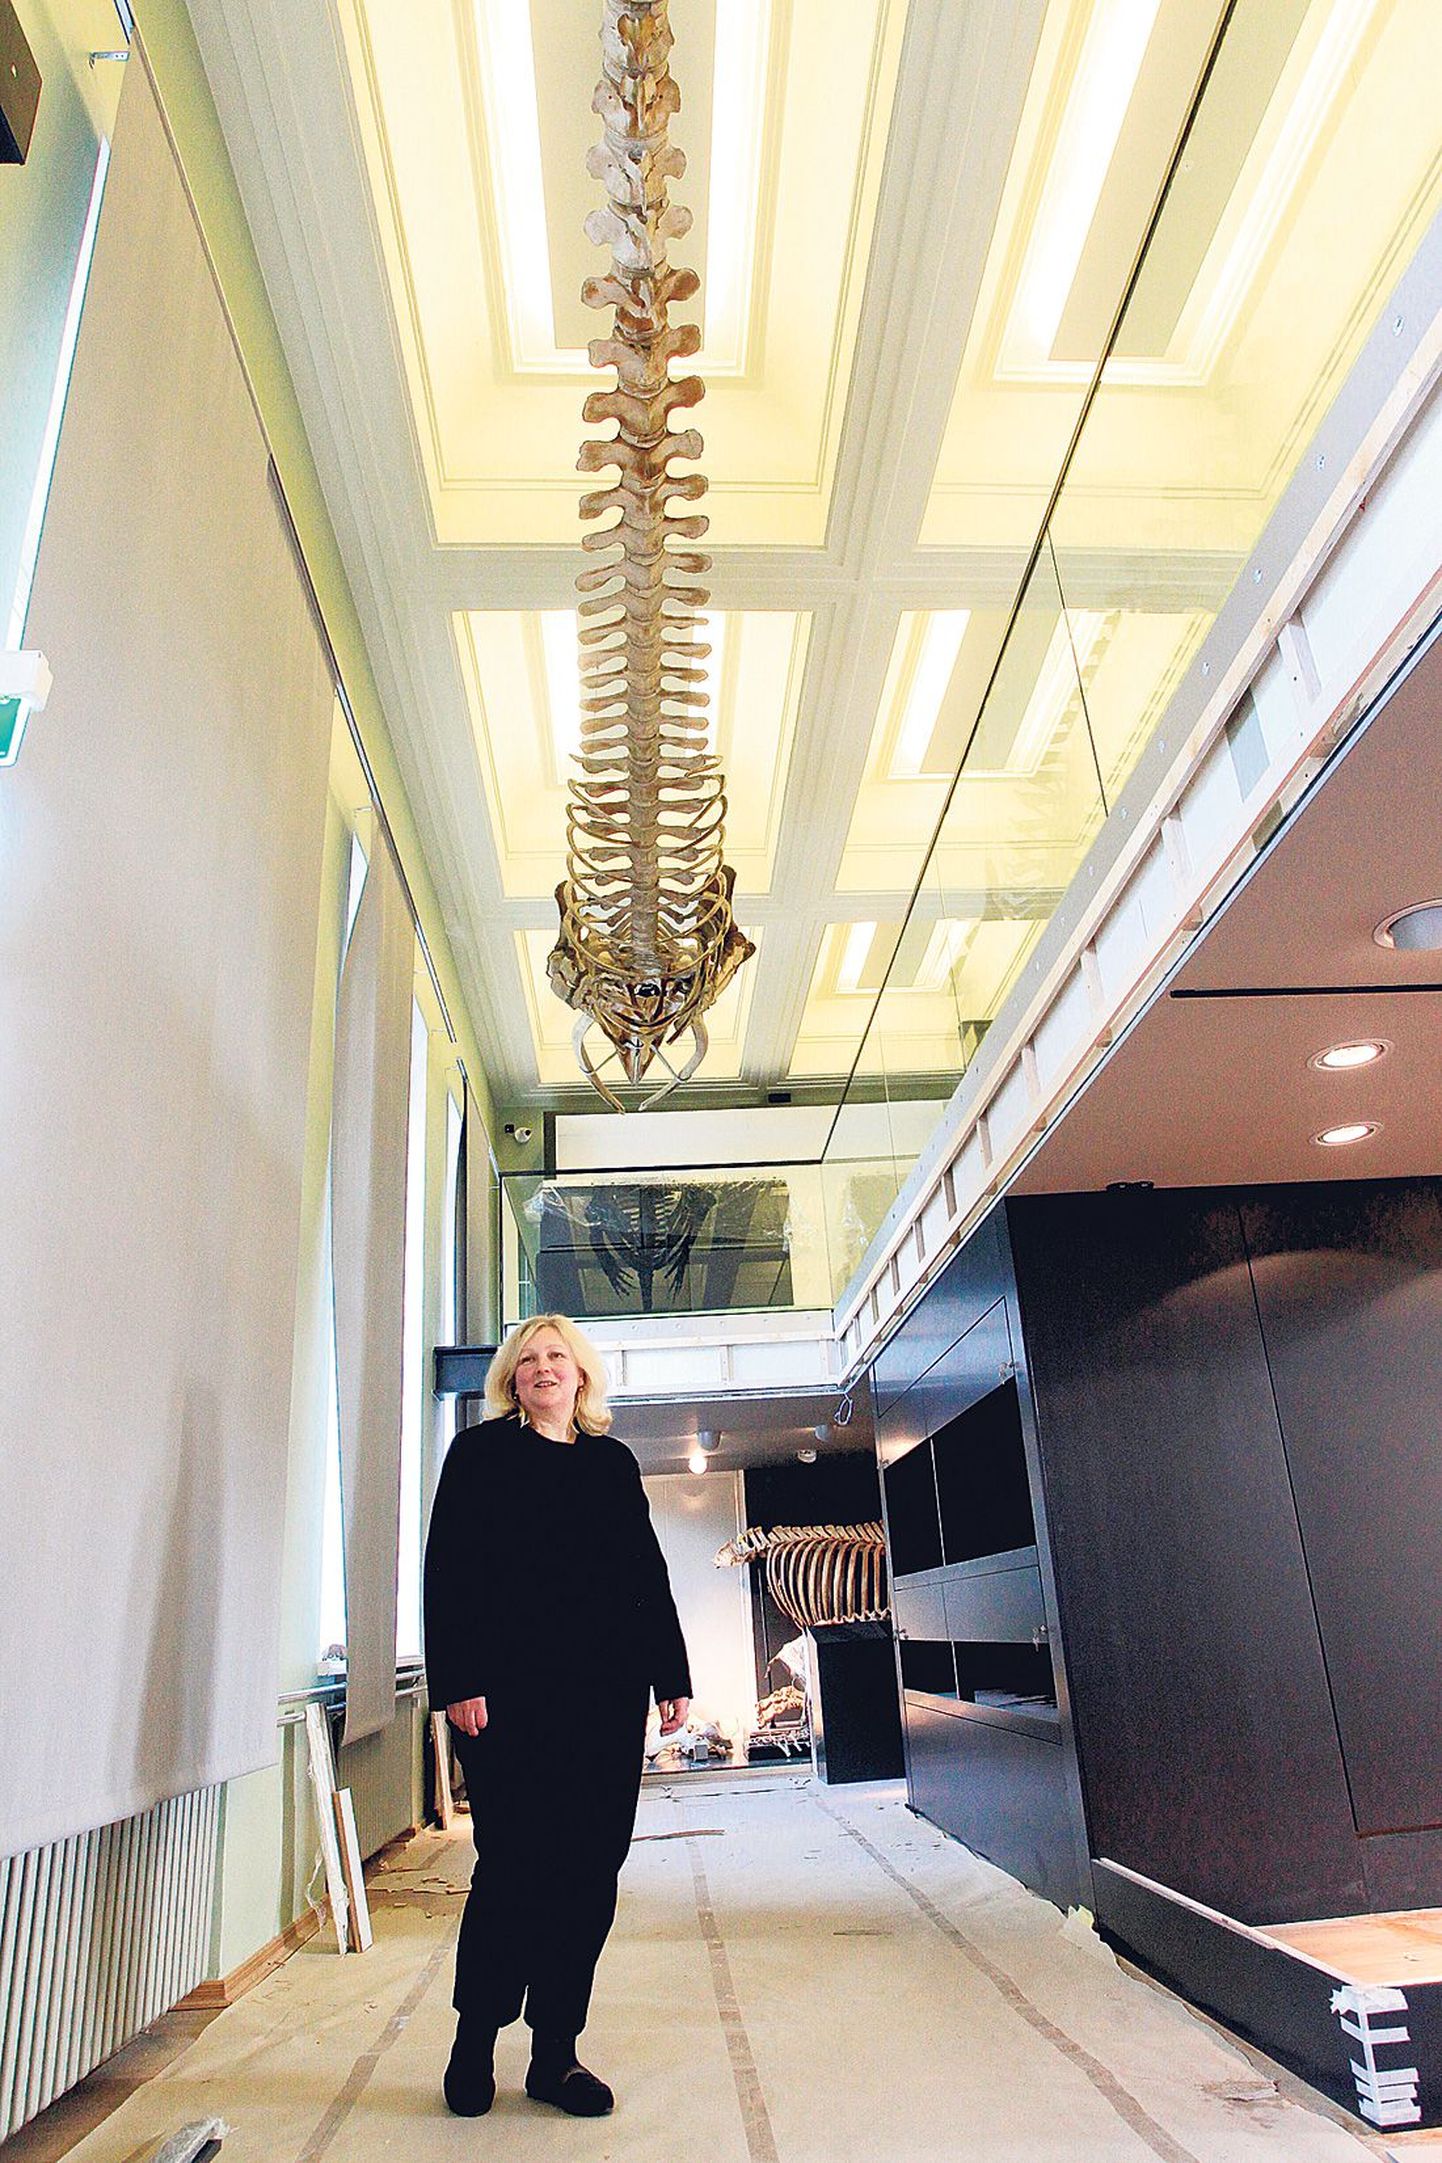 Tartu ülikooli loodusmuuseumi ekspositsiooni üks aukartustäratavamaid eksponaate on vaala luustik (ripub laes). Põrandal seisab muuseumi direktori asetäitja Reet Mägi.